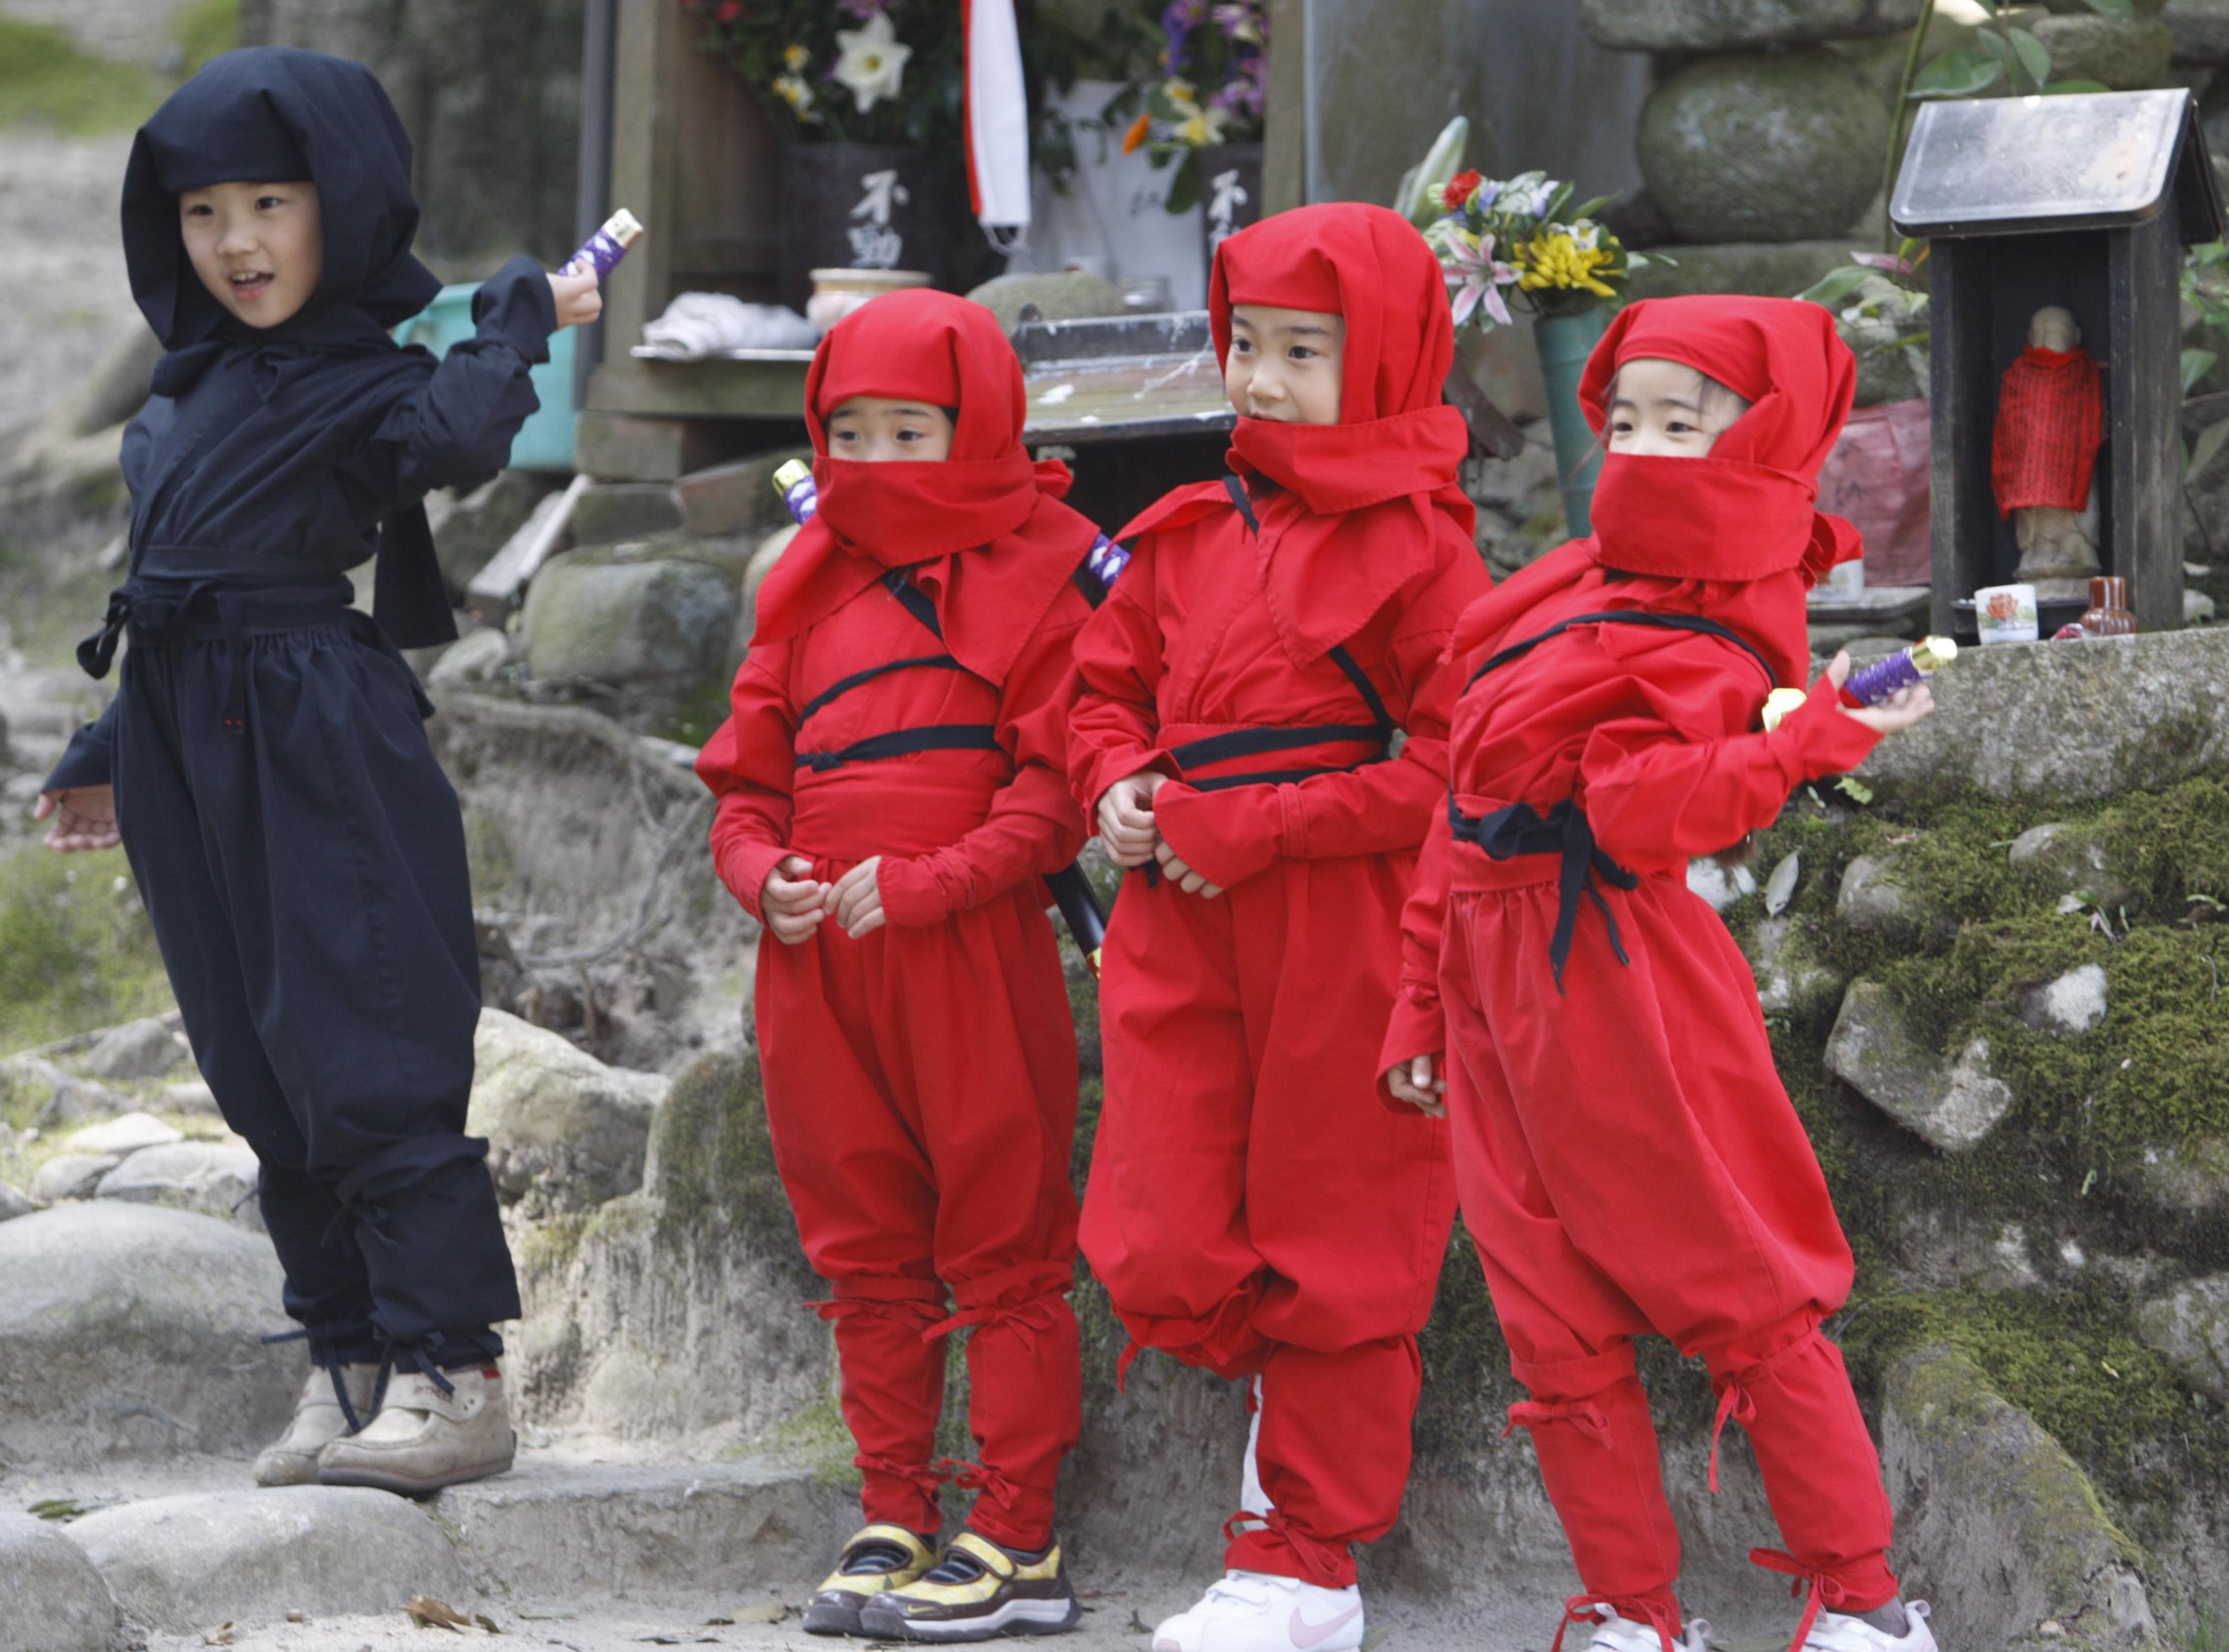 Ninja festival in Japan